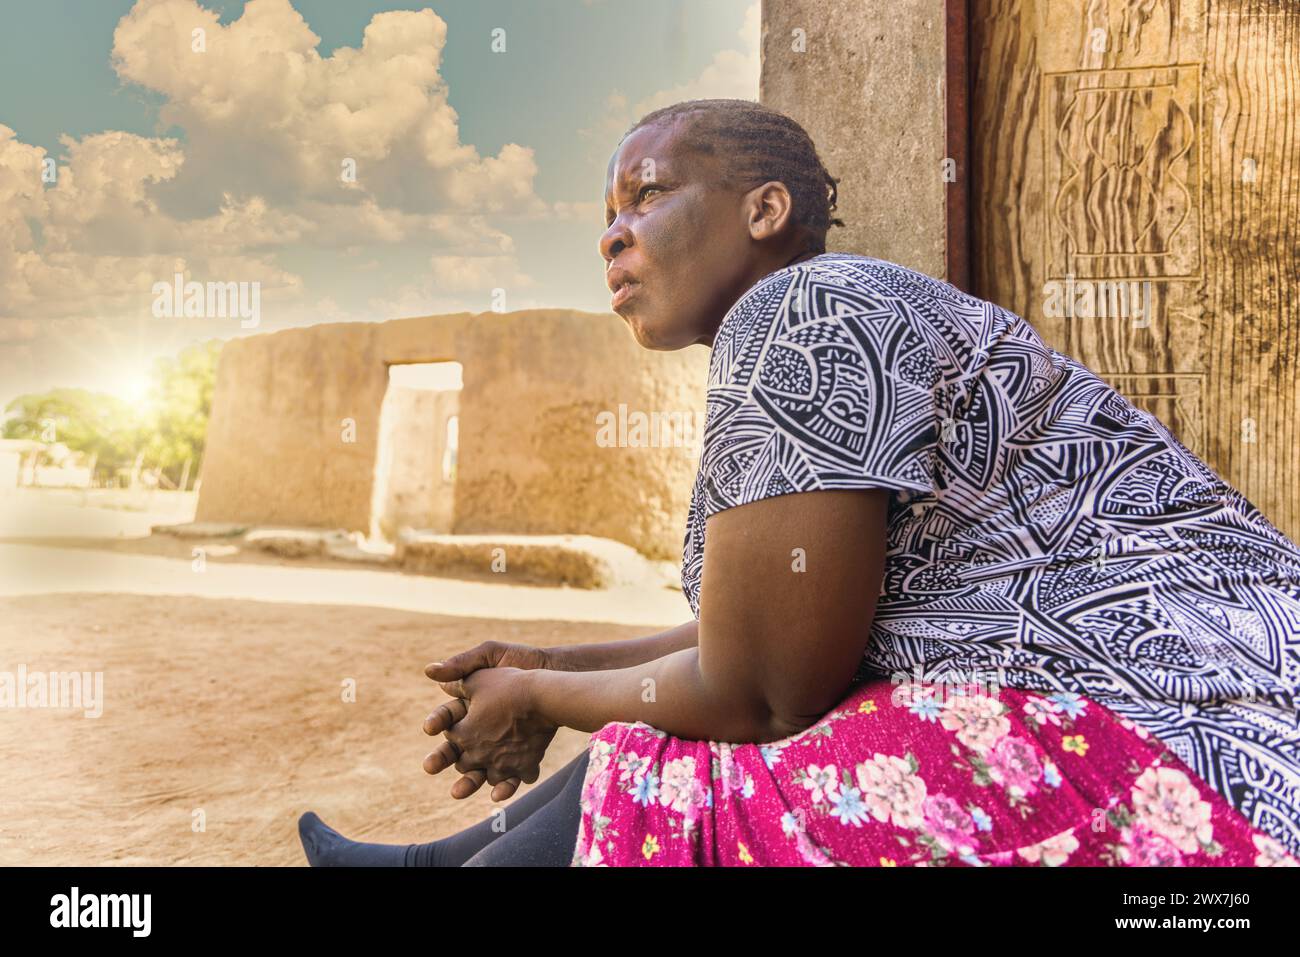 vieille femme africaine assise sur la véranda, maison de boue en ruine en arrière-plan, vie de village africain Banque D'Images